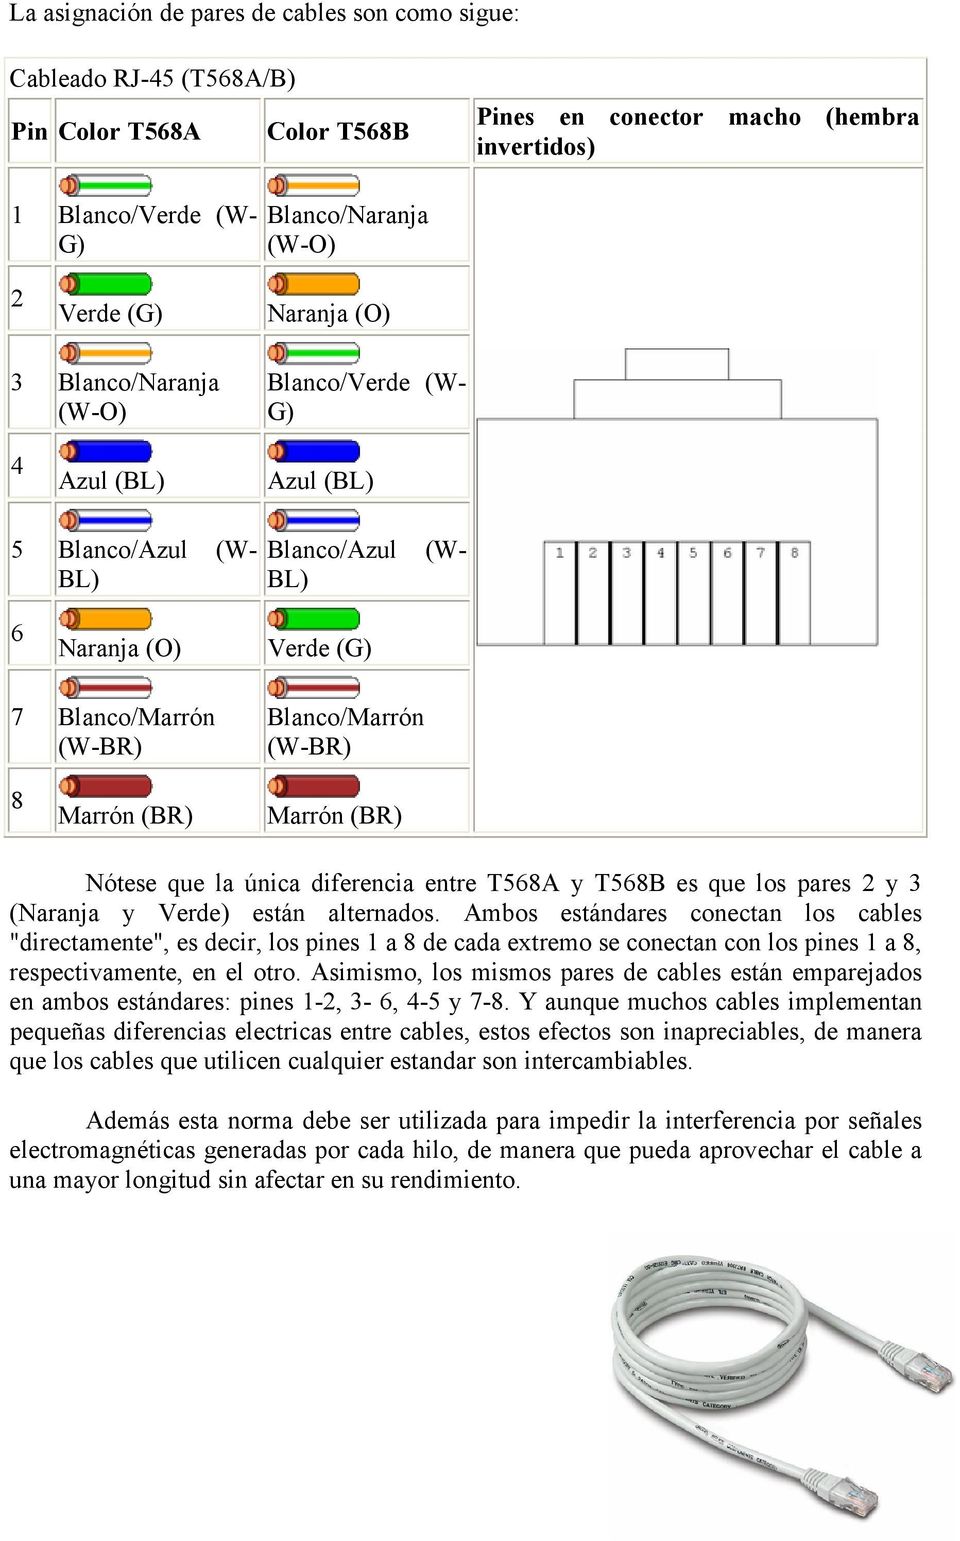 (BR) Marrón (BR) Nótese que la única diferencia entre T568A y T568B es que los pares 2 y 3 (Naranja y Verde) están alternados.